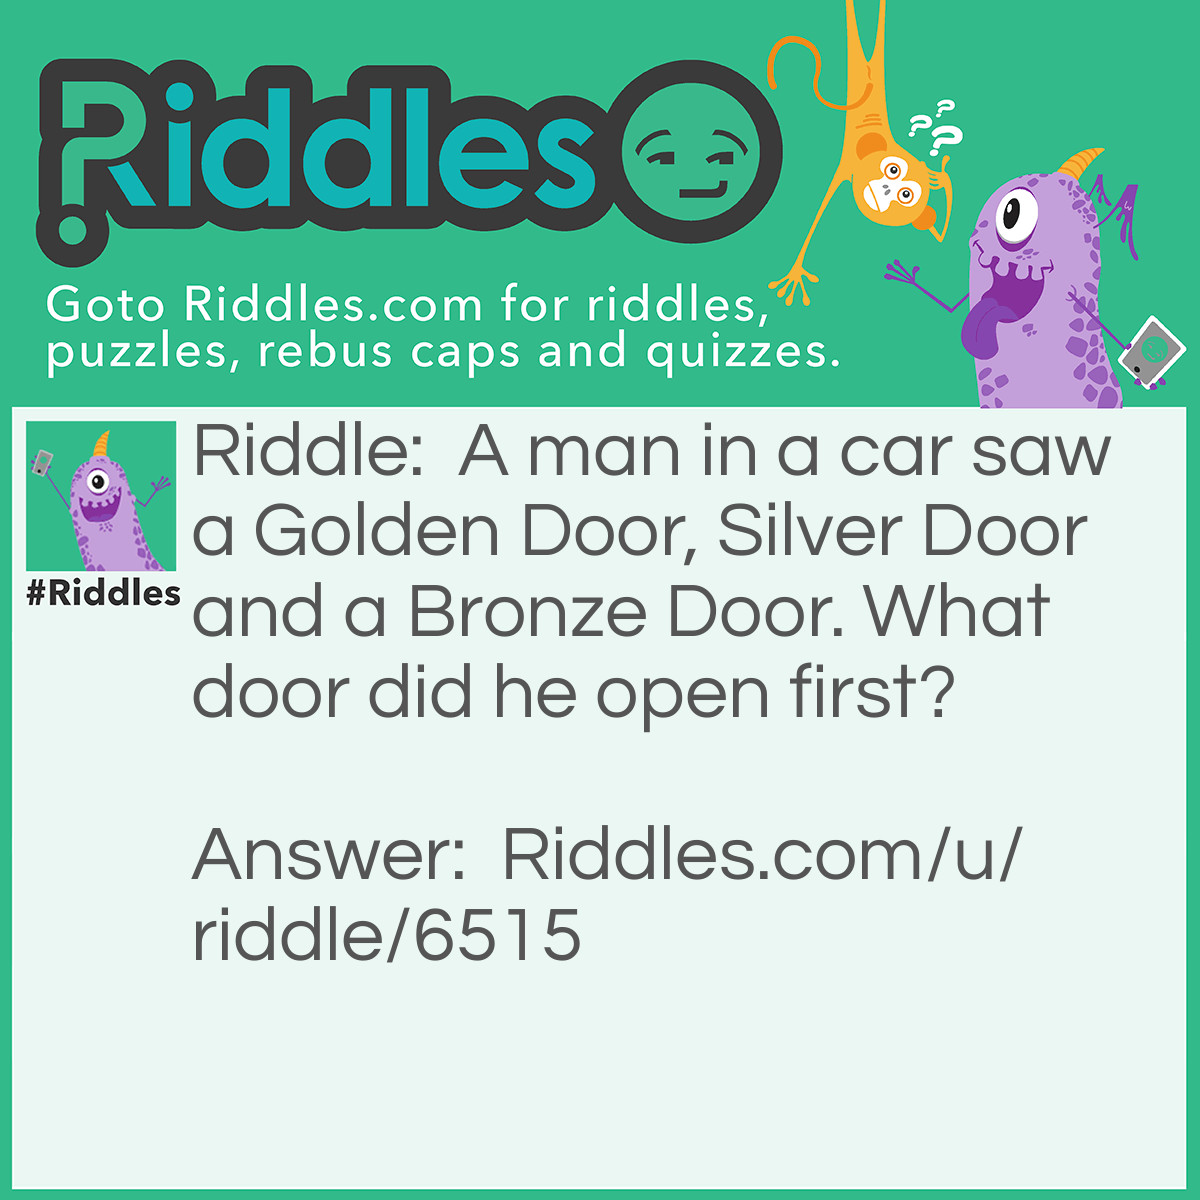 Riddle: A man in a car saw a Golden Door, Silver Door and a Bronze Door. What door did he open first? Answer: The car door.